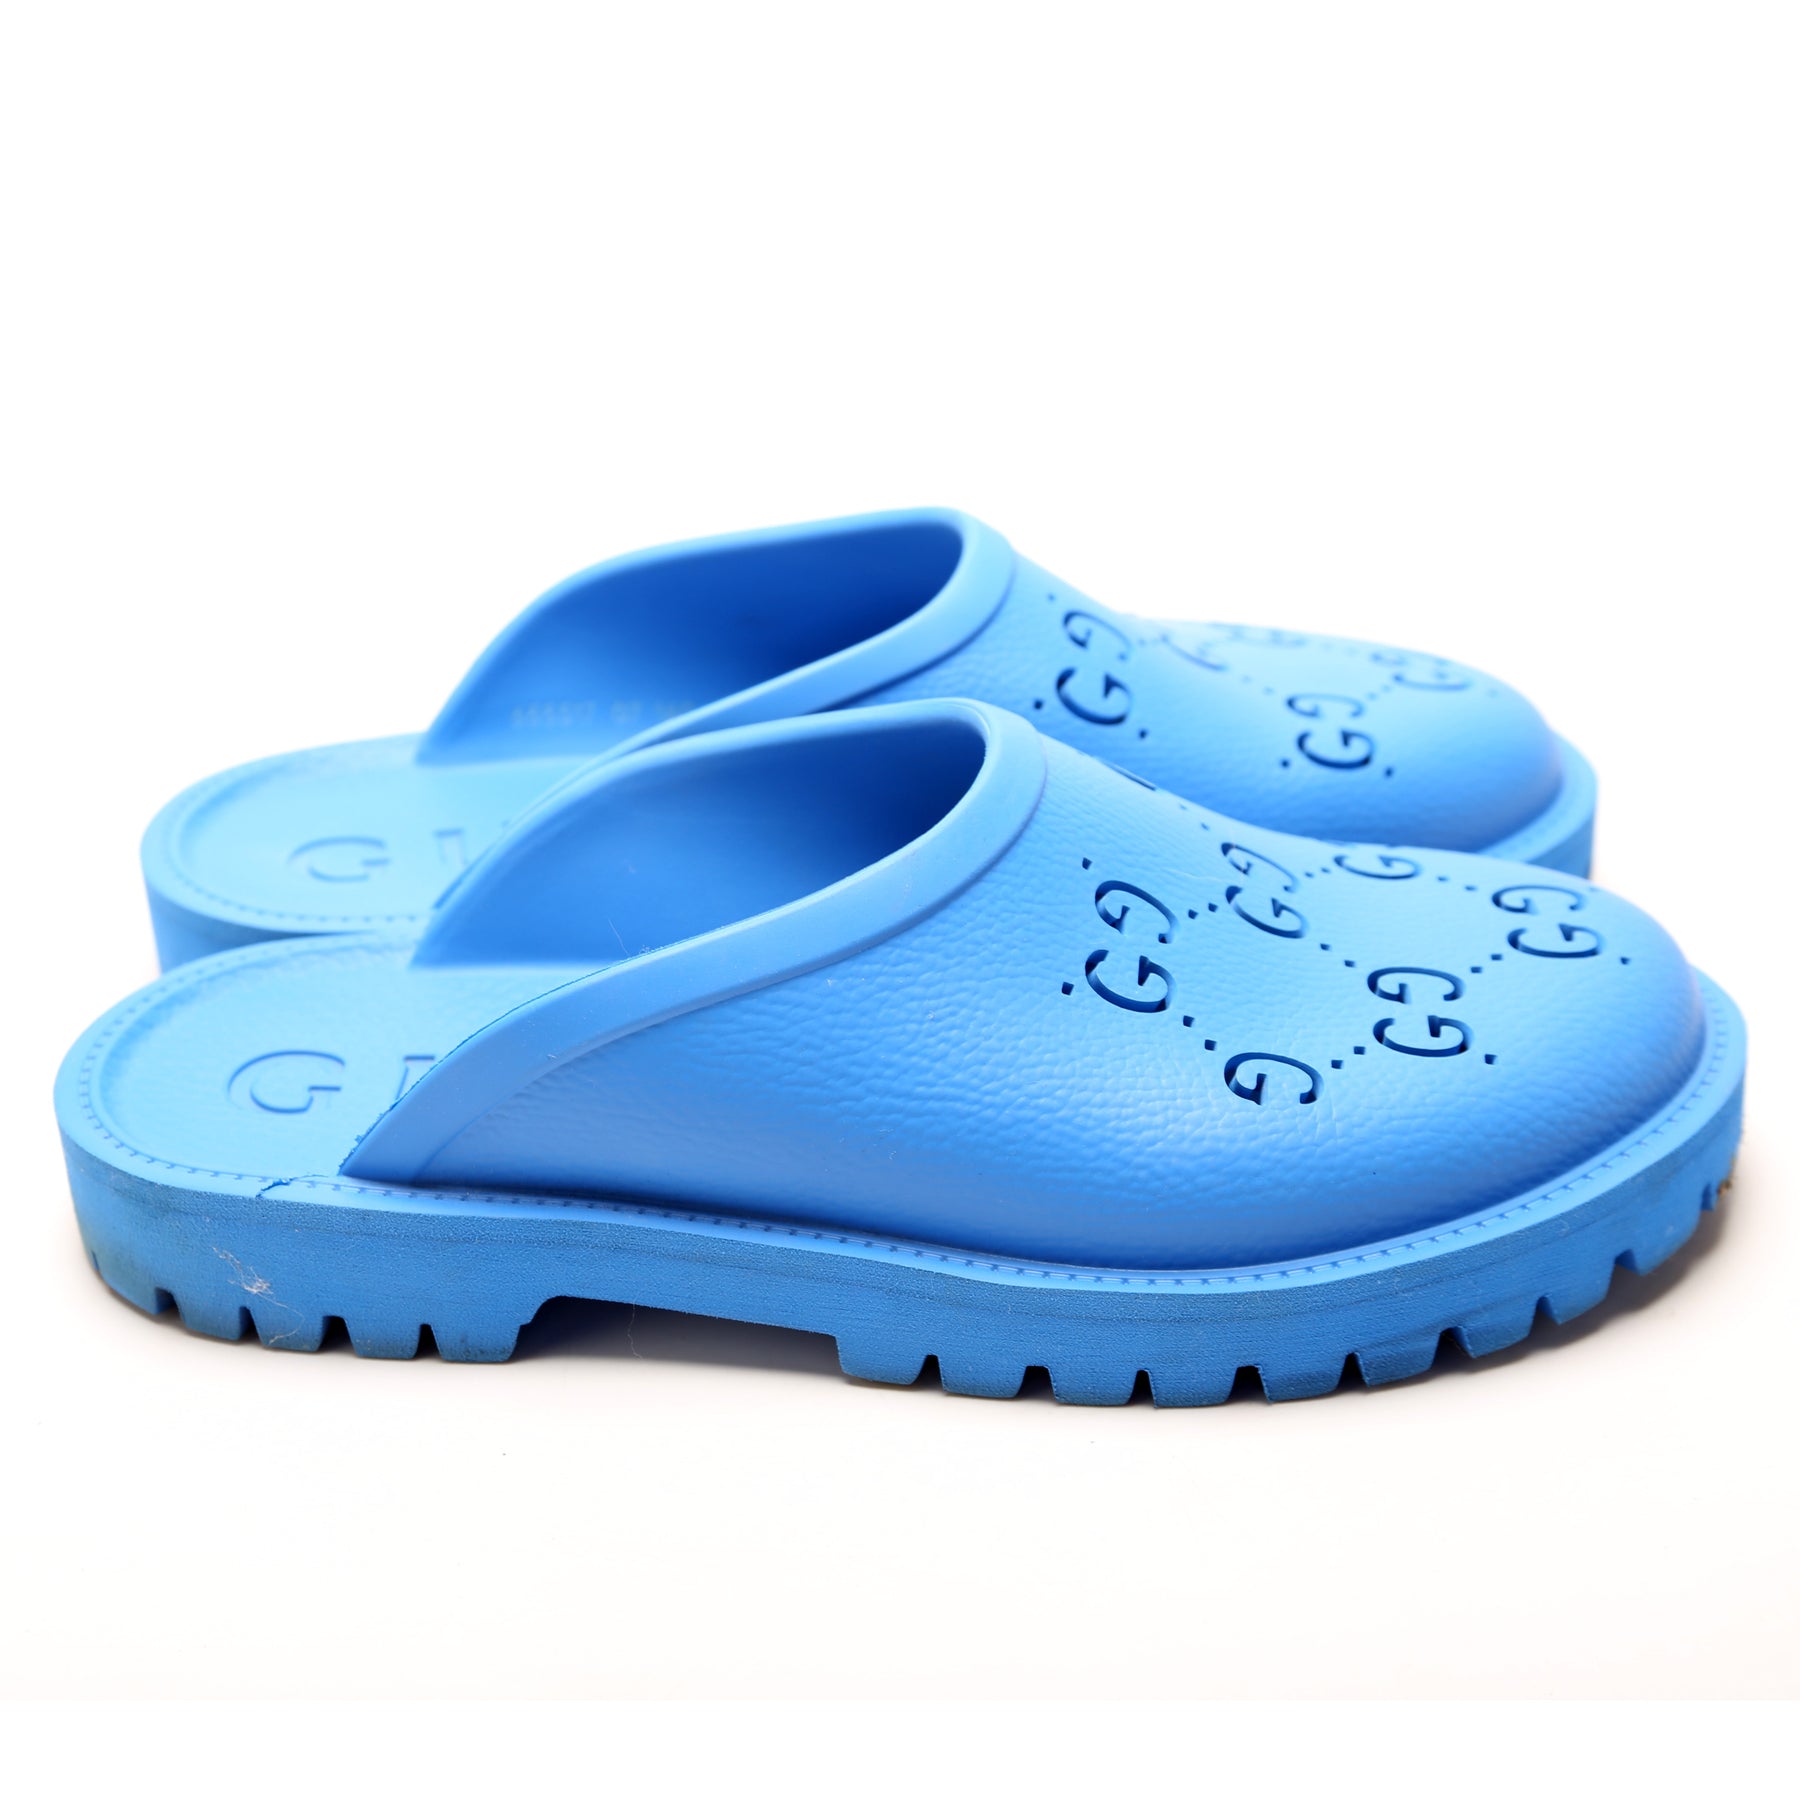 Men's slip-on sandal in whtie GG rubber